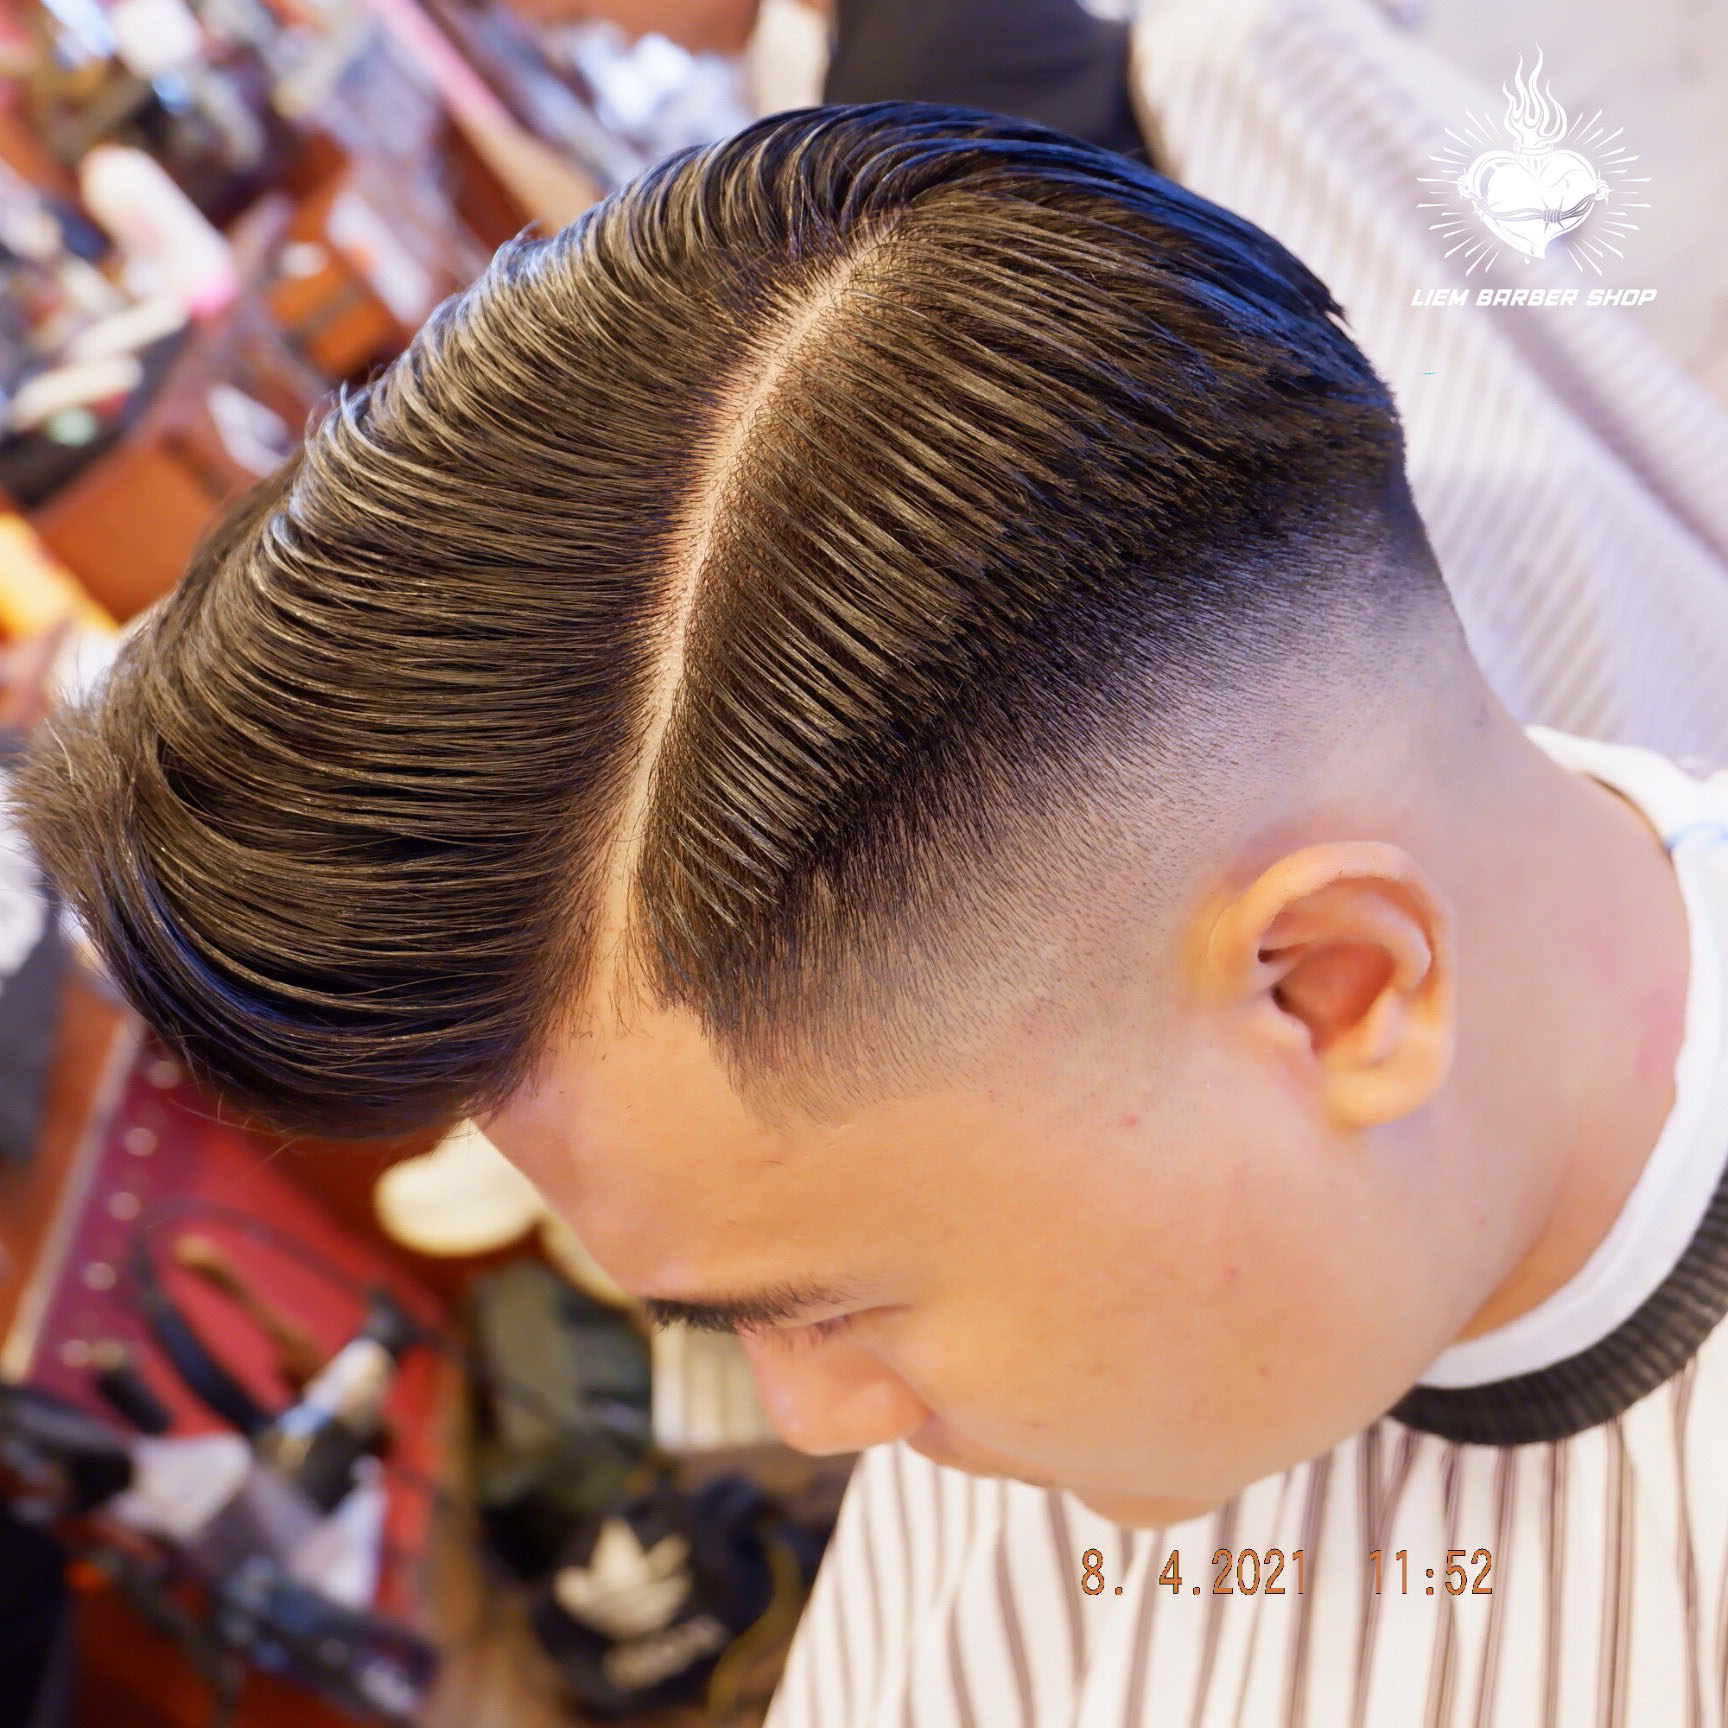 Top 10 tiệm cắt tóc nam đẹp và chất lượng cao tại TP HCM